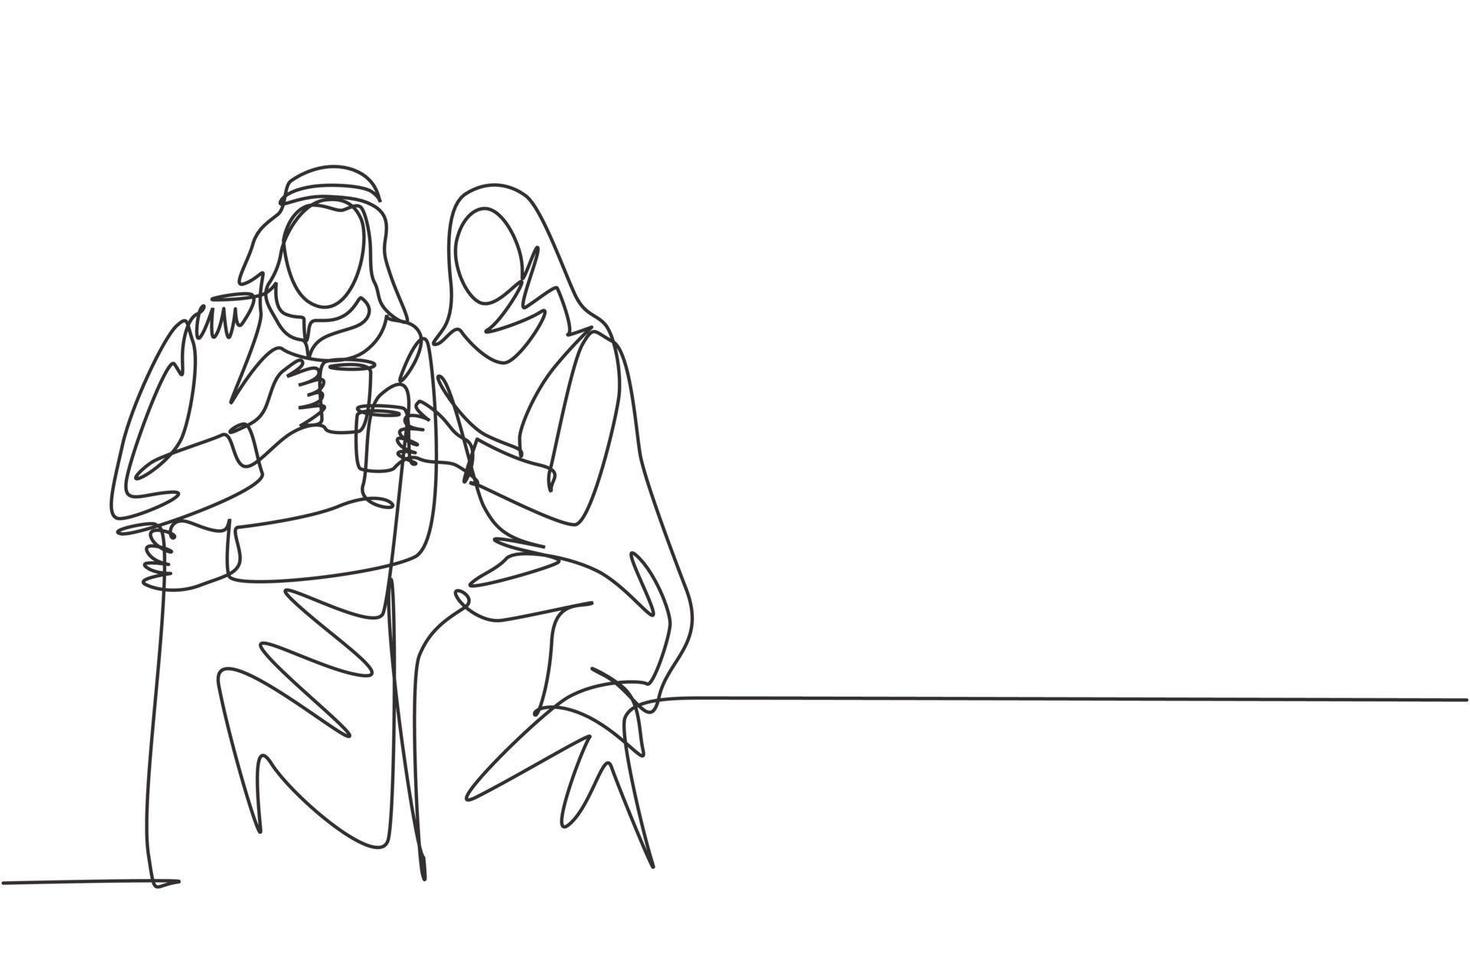 en kontinuerlig linjeteckning av unga muslimska och muslimah -par poserar romantiskt tillsammans medan de håller en kopp kaffe. islamiska kläder shmagh, kandura, halsduk. enkel linje rita design illustration vektor